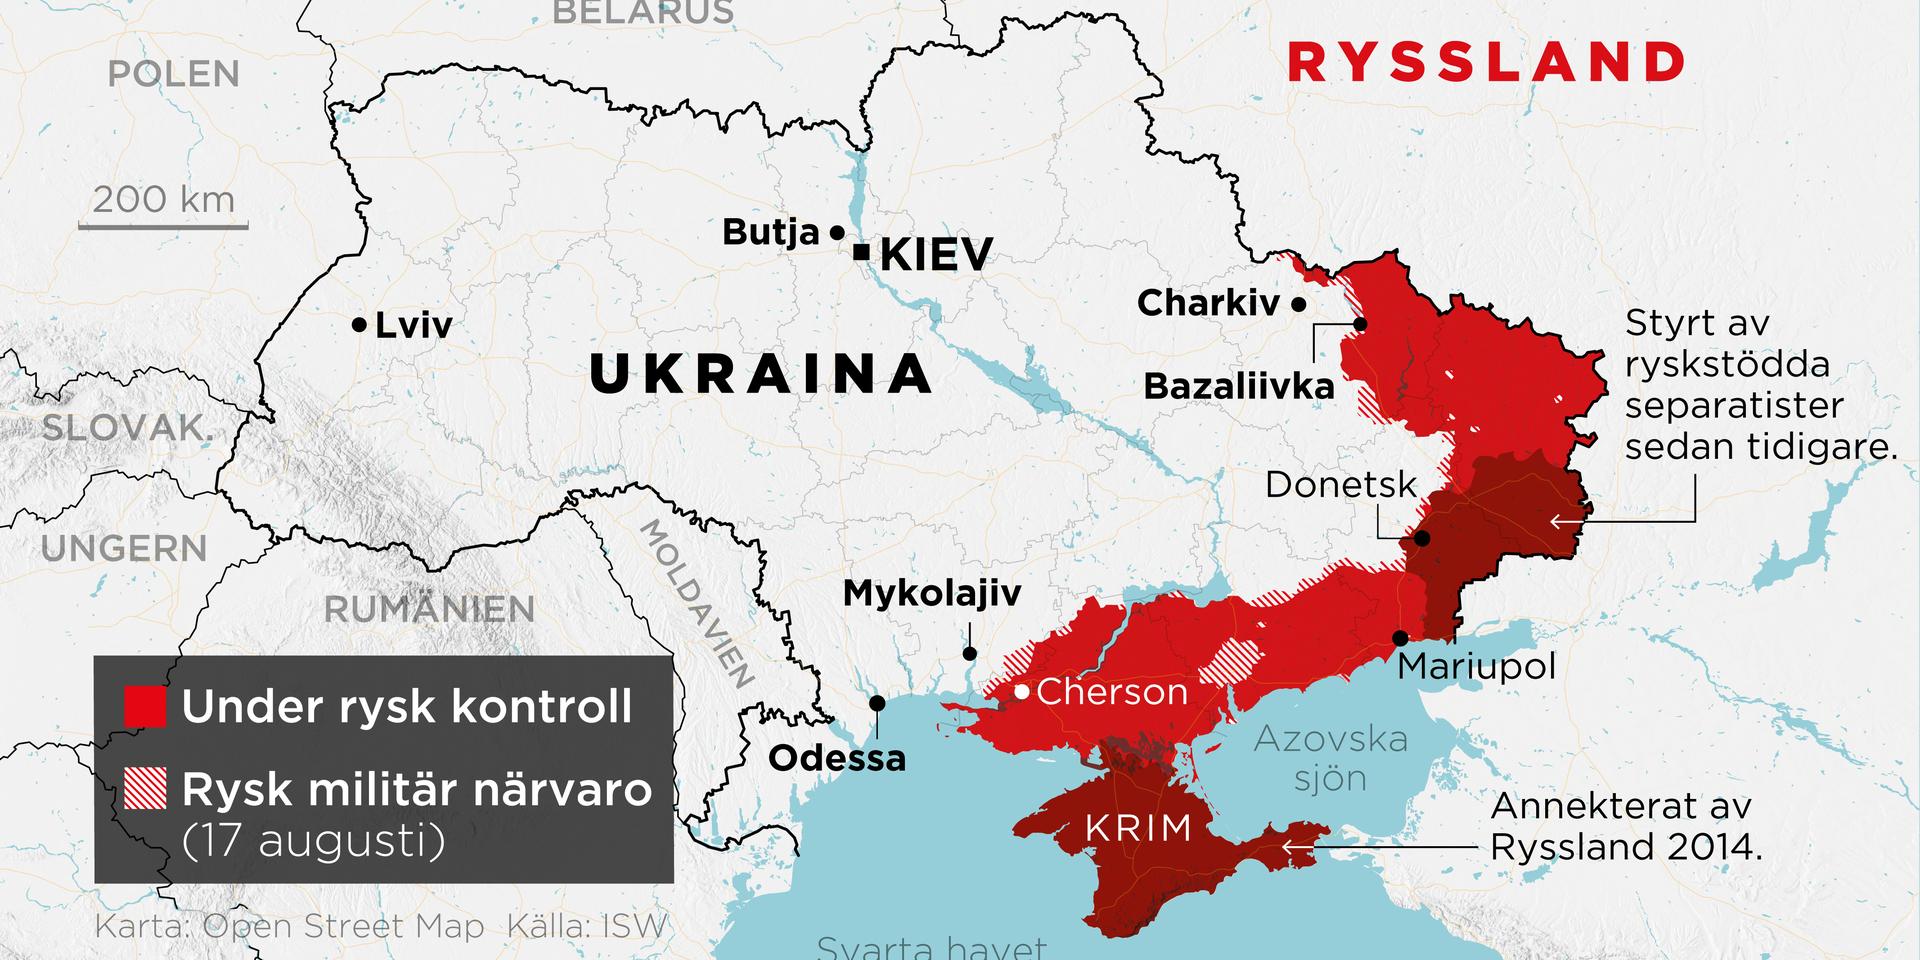 Områden under rysk kontroll samt områden med rysk militär närvaro den 17 augusti.